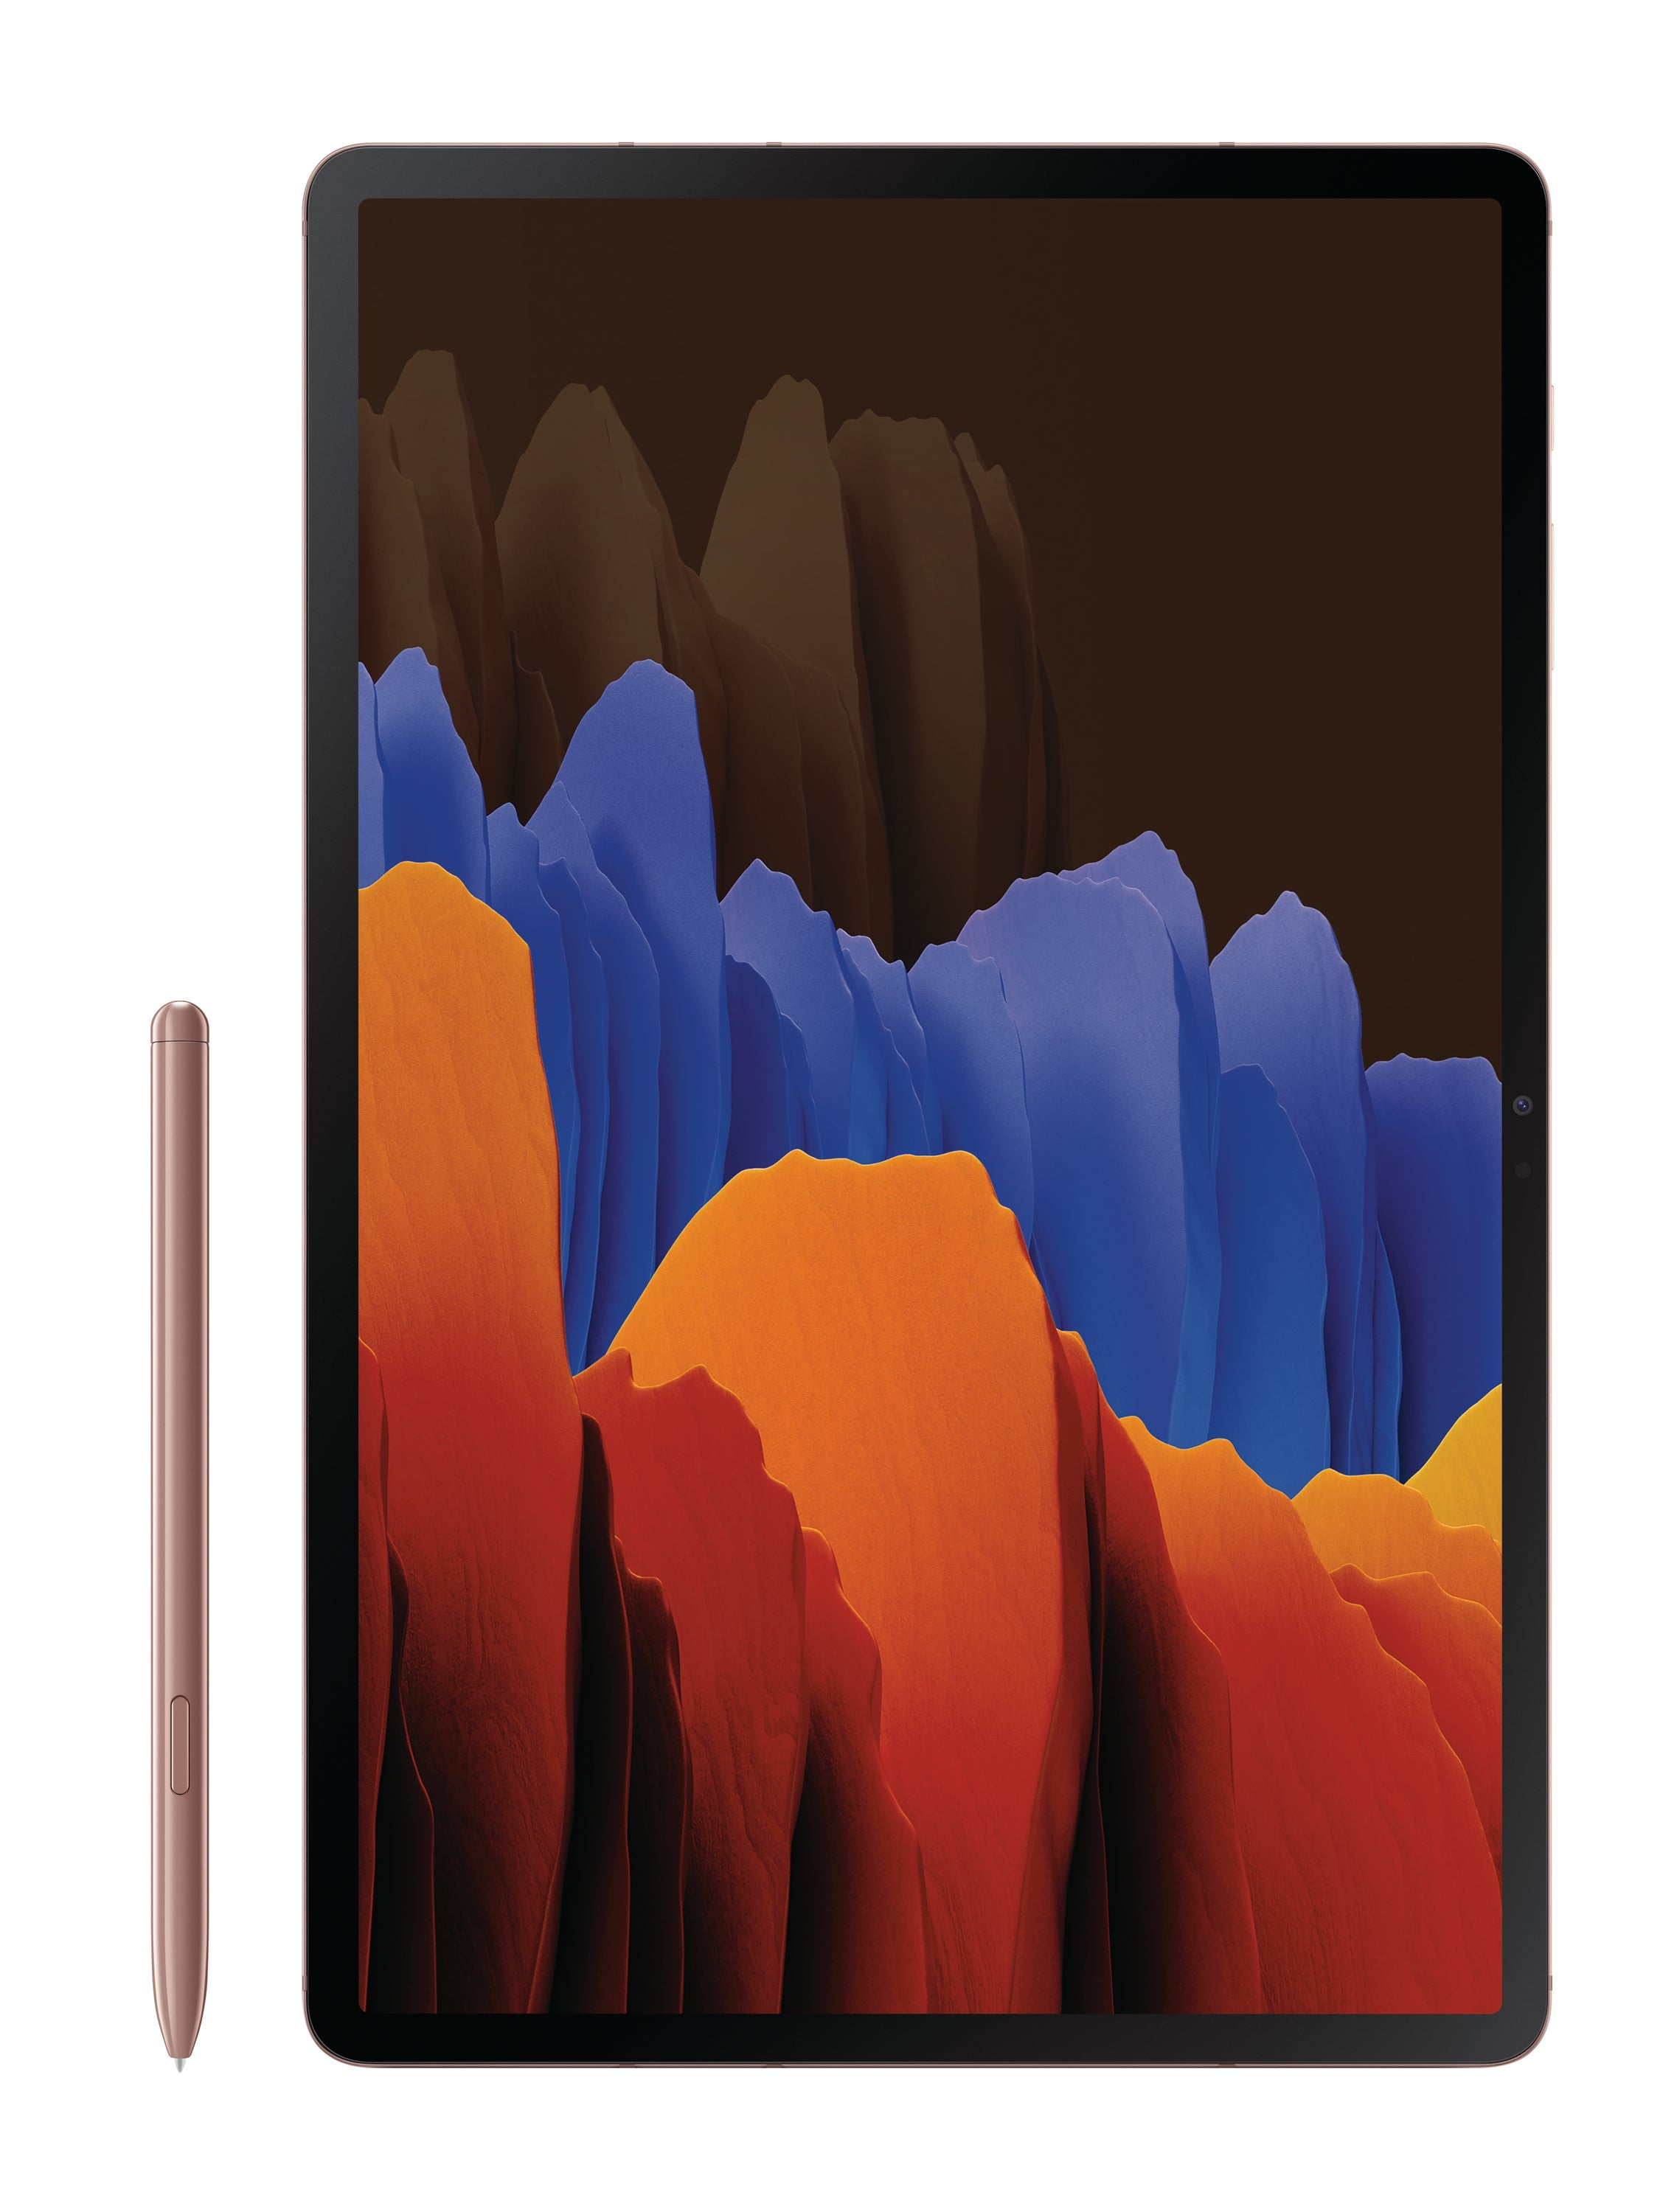 音声合成の時代が Tab 【Sペン付】Galaxy S7 US版 Bronze Mystic タブレット